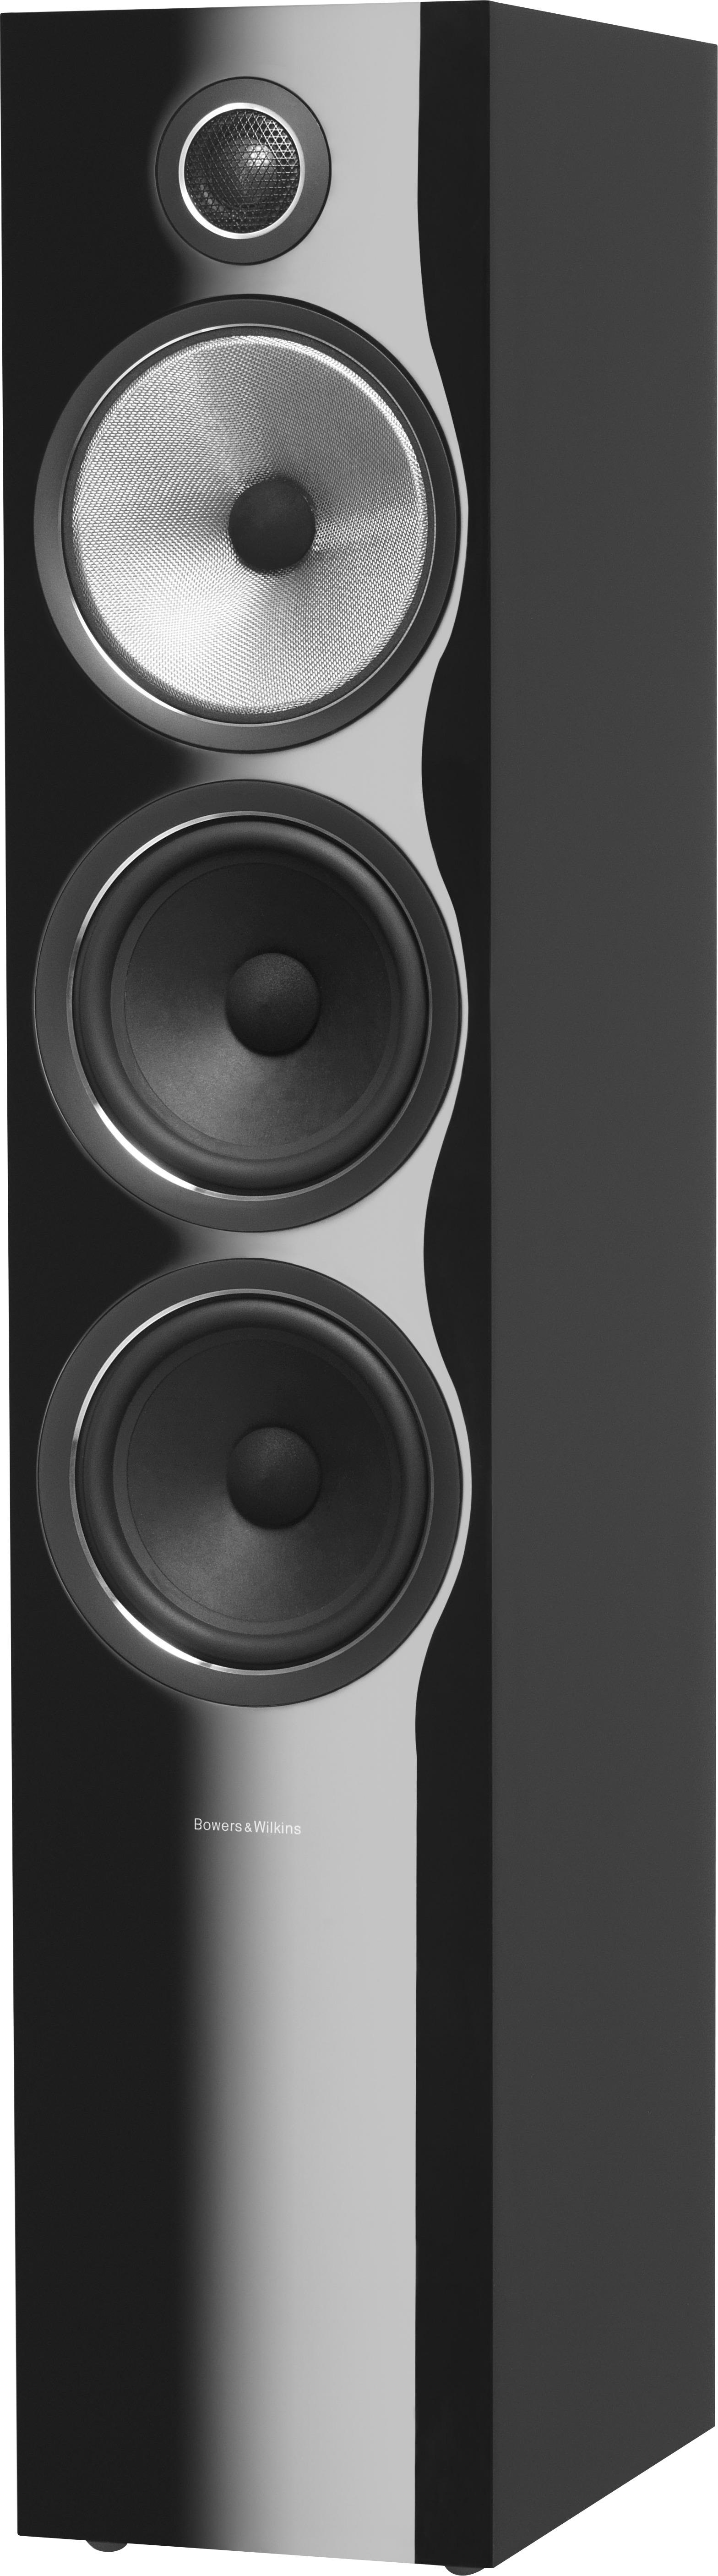 Bowers & Wilkins - 700 Series 3-way Floorstanding Speaker w/6" midrange, dual 6.5" bass (each) - Gloss Black